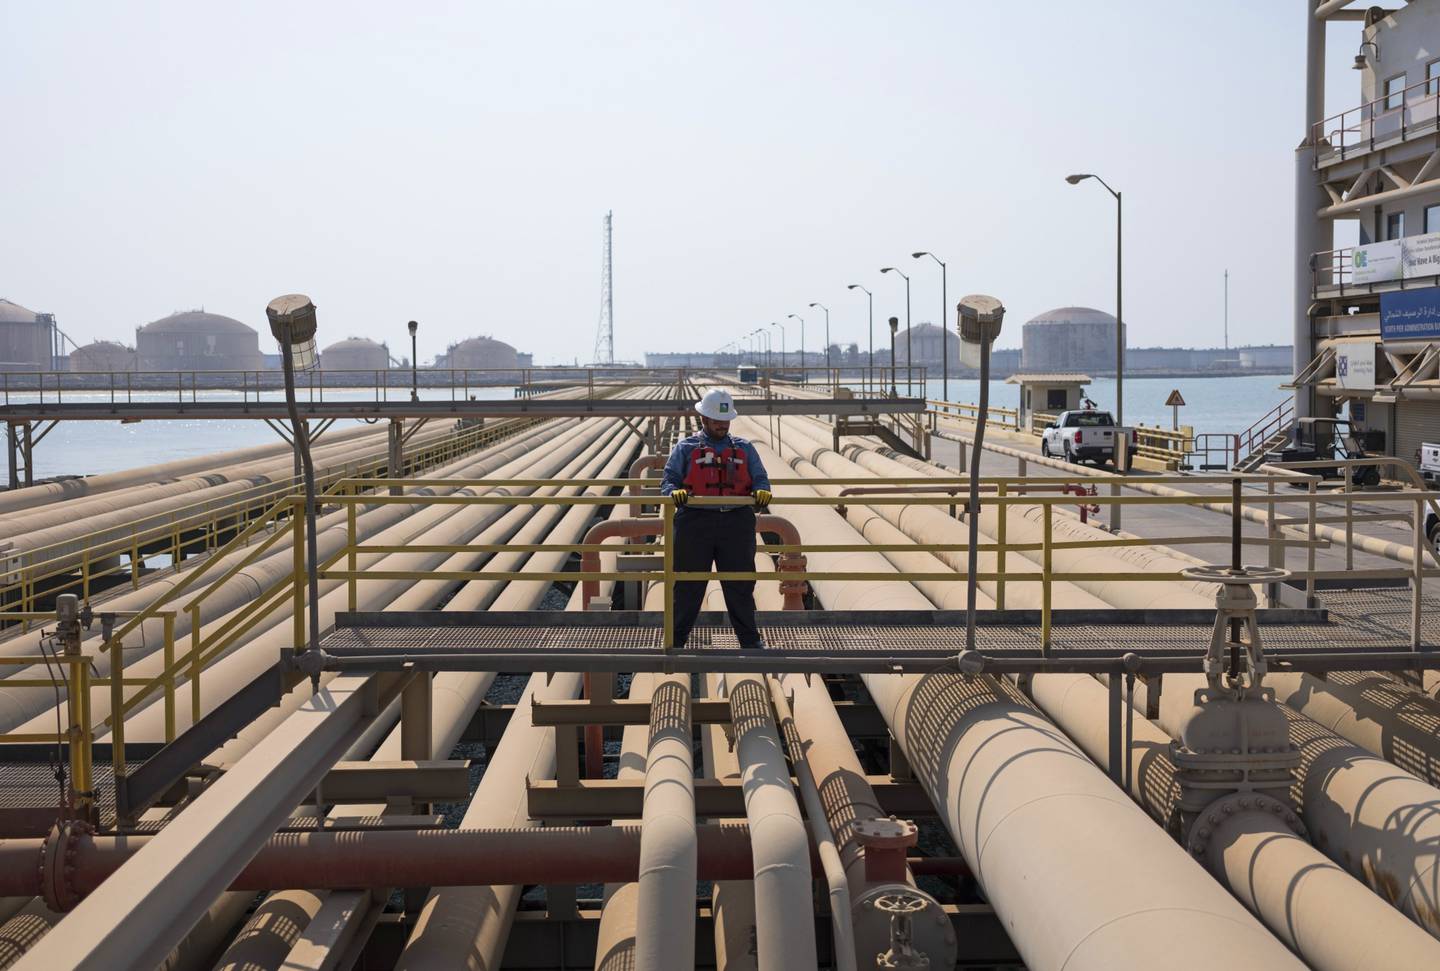 El país cree que pronto el precio del petróleo dejará de ser decisivo en sus políticas económicas